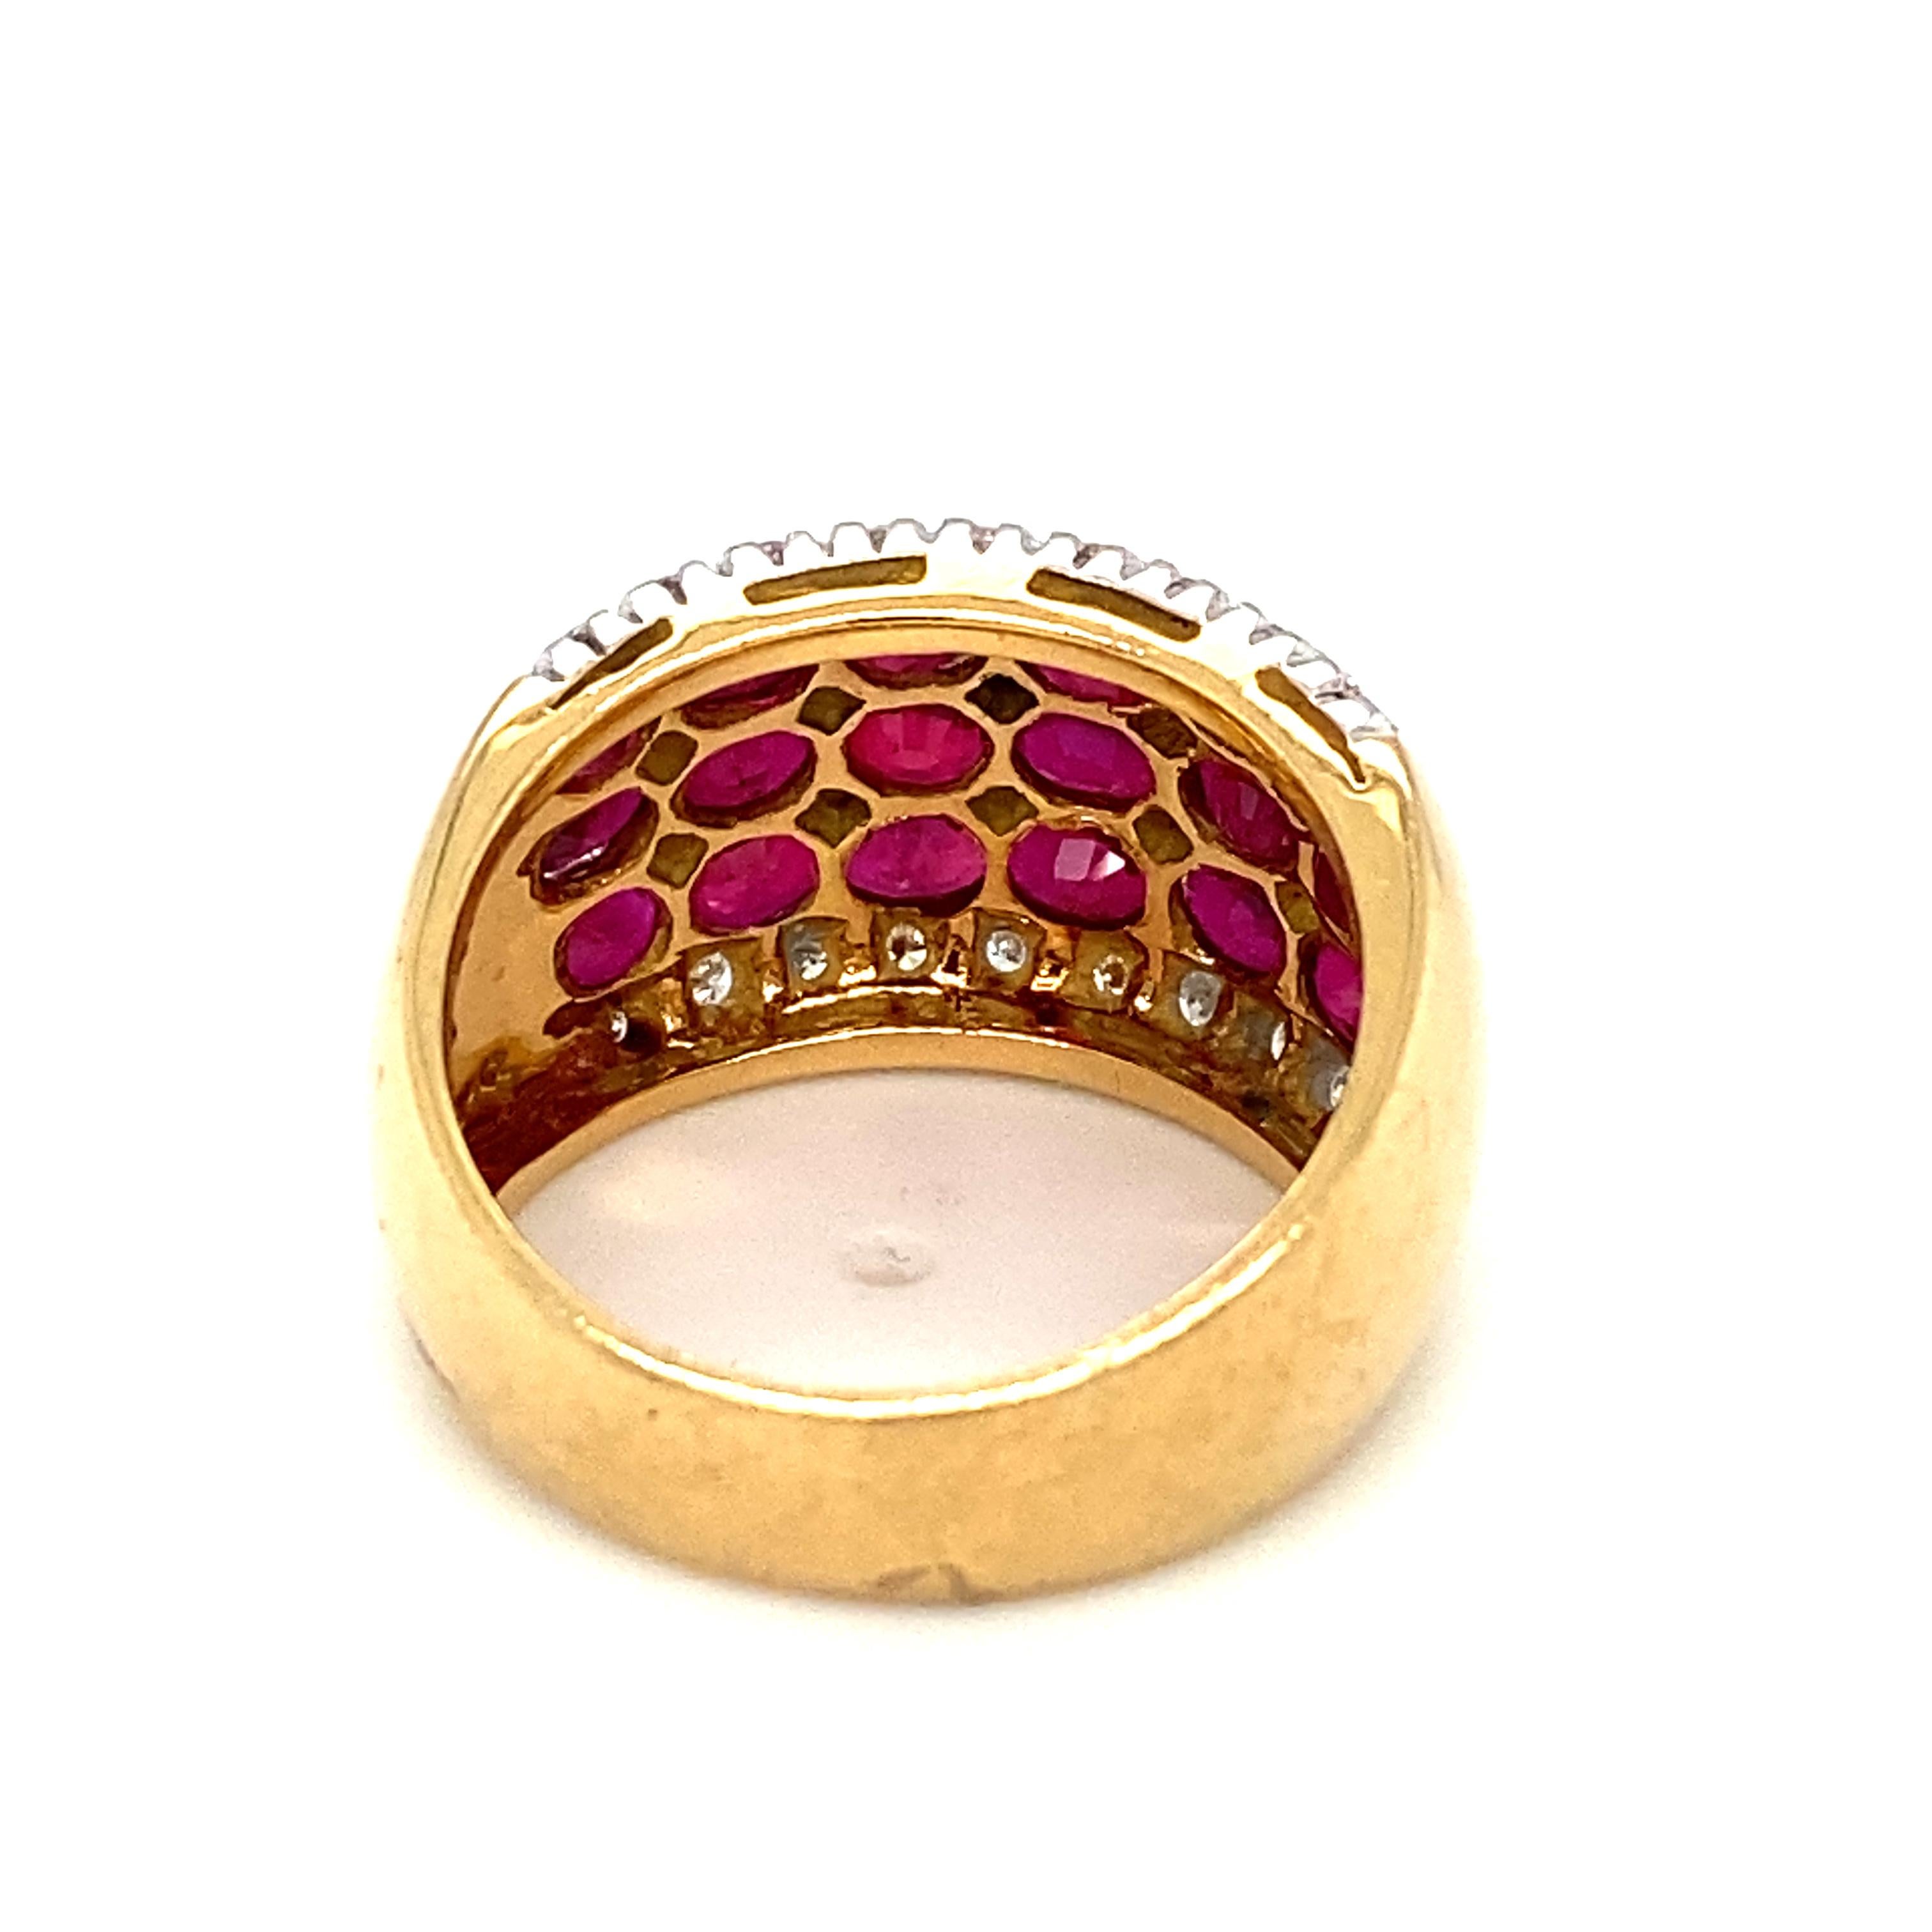 Détails de l'article : Ce bracelet de la marque Le Vian est composé de rubis ovales totalisant deux carats et de diamants d'accentuation entre les deux. Réalisé en or bicolore 18 carats, il s'agit d'une excellente pièce d'identité !

Circa :